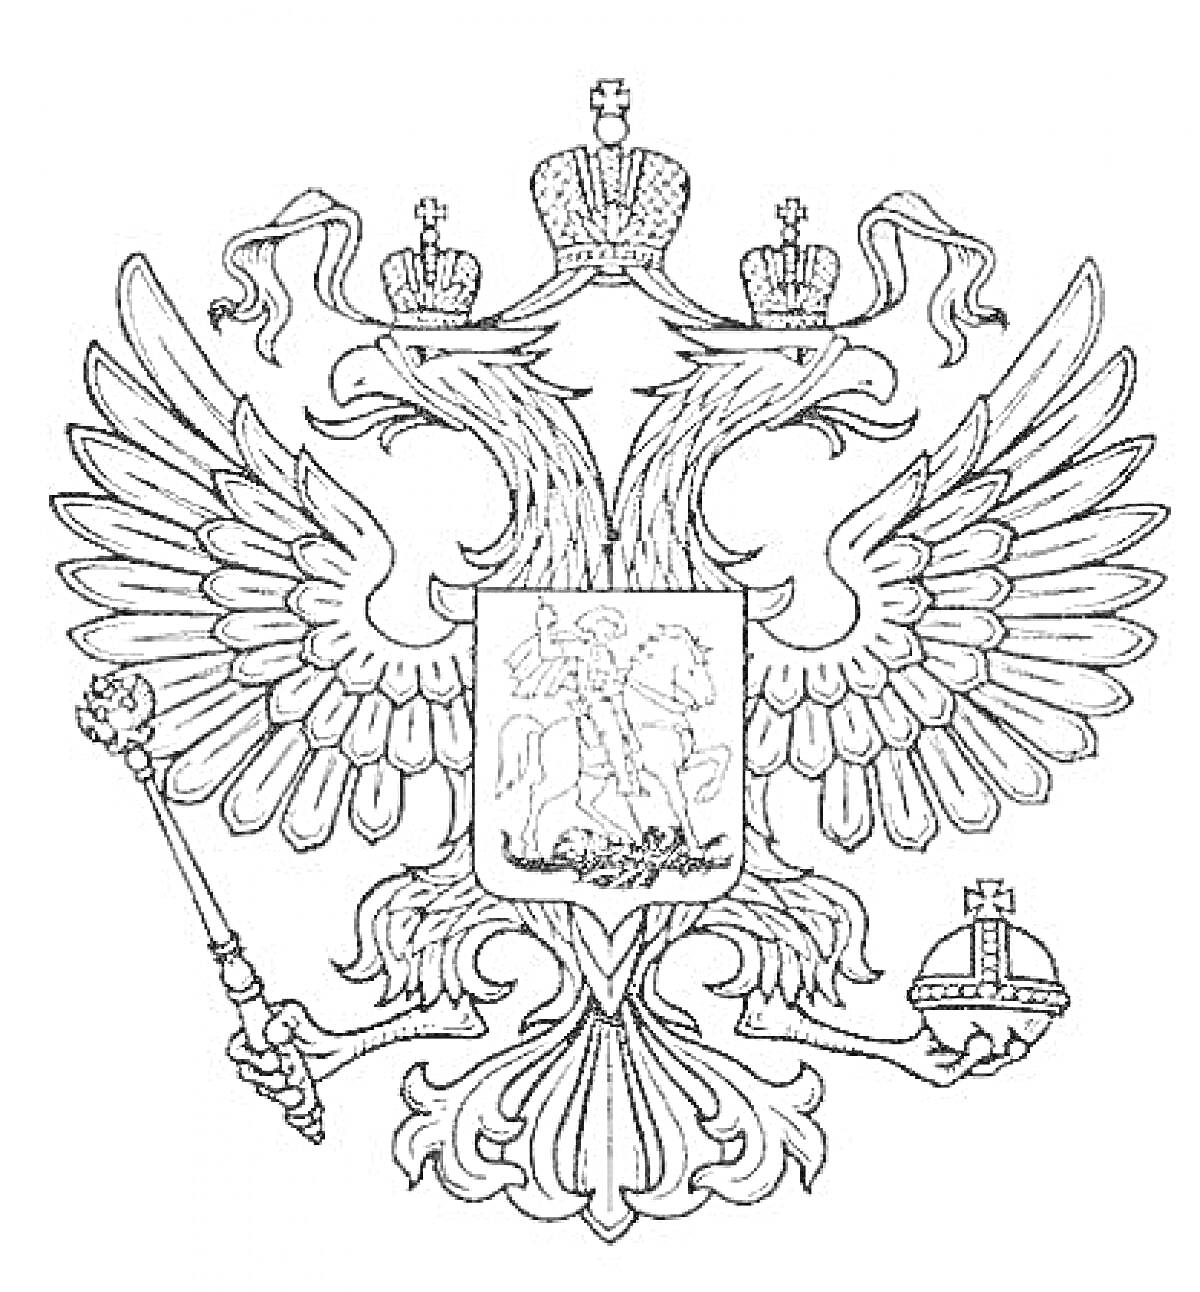 Раскраска Герб России - двуглавый орел с тремя коронами, скипетром и державой, на груди - святой Георгий Победоносец